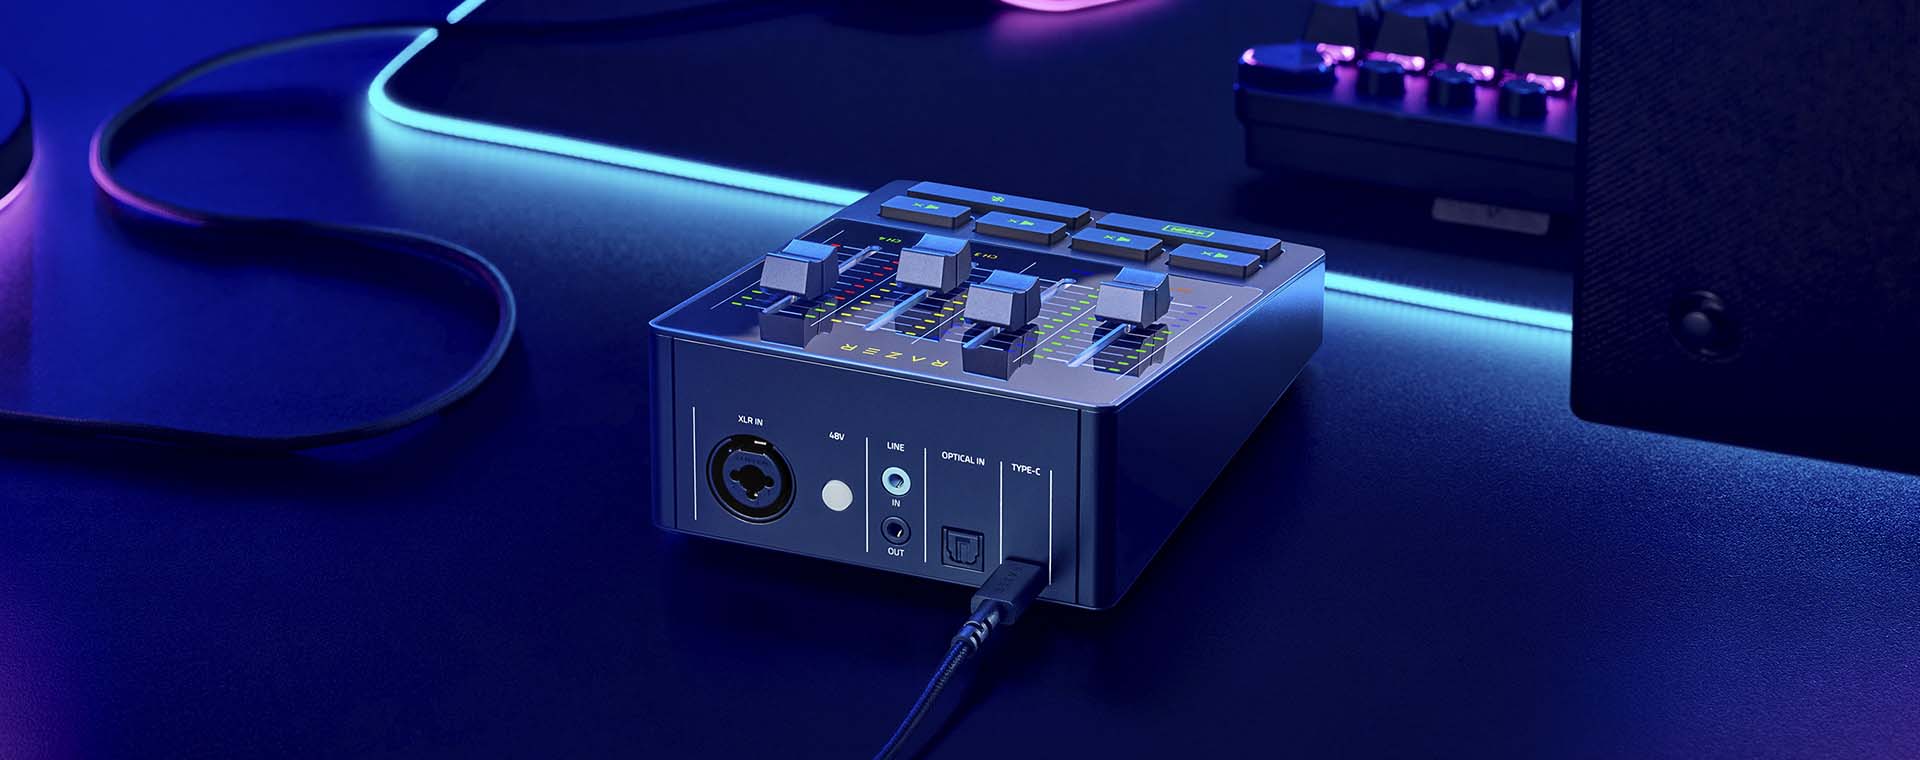 میکسر صدای ریزر مدل Razer Audio Mixer